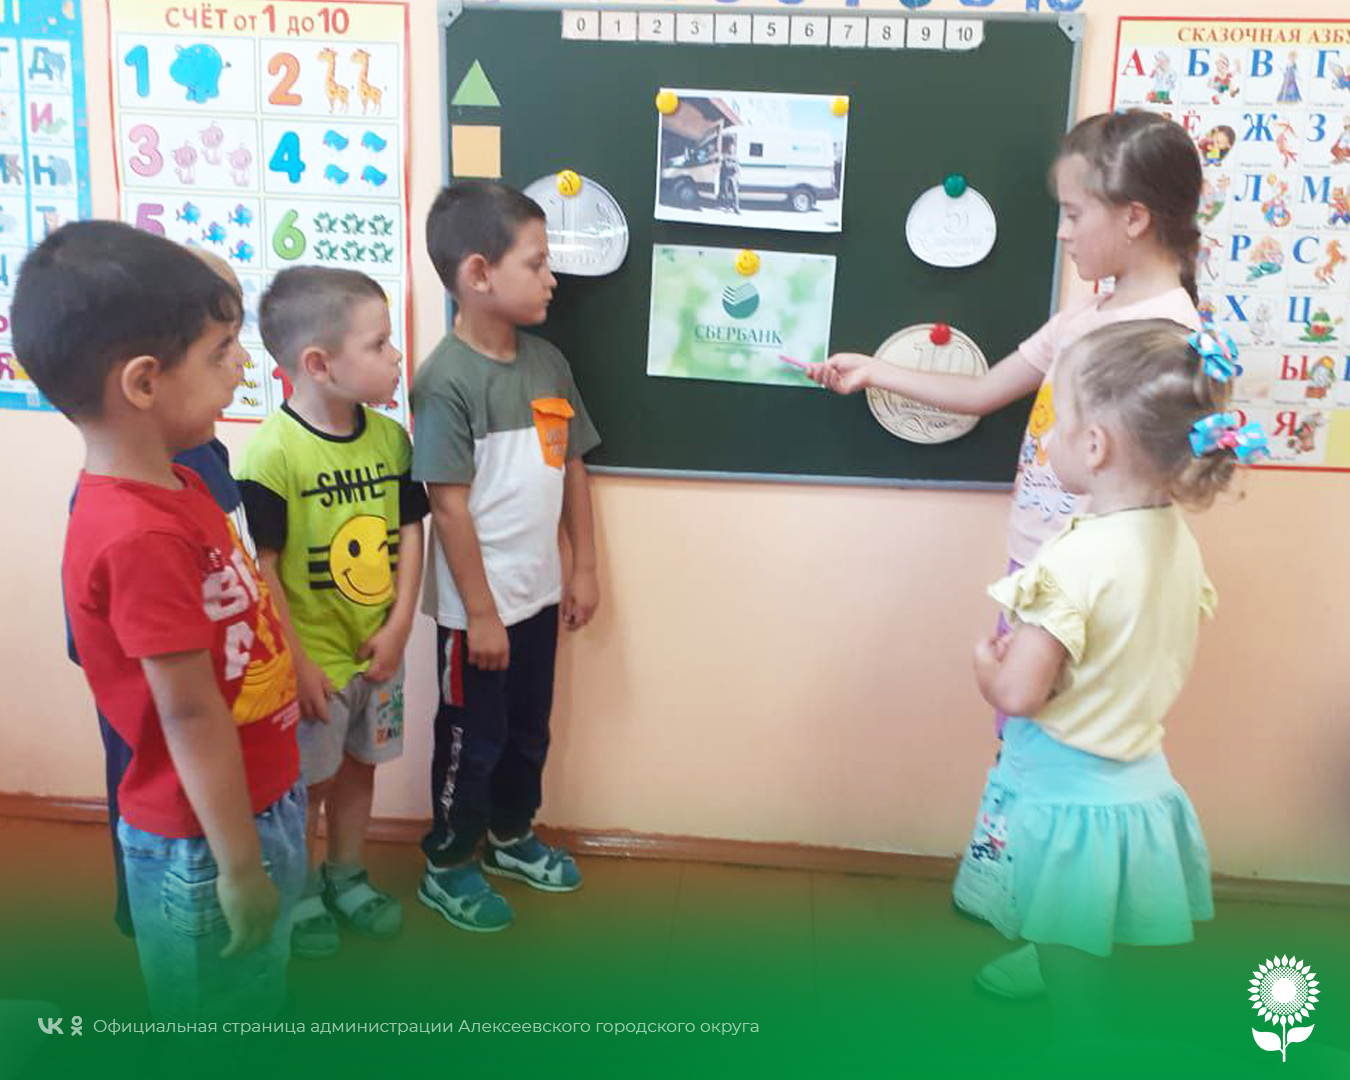 В детских садах Алексеевского городского округа прошел тематический день, посвященный профессиональному празднику сотрудников инкассации